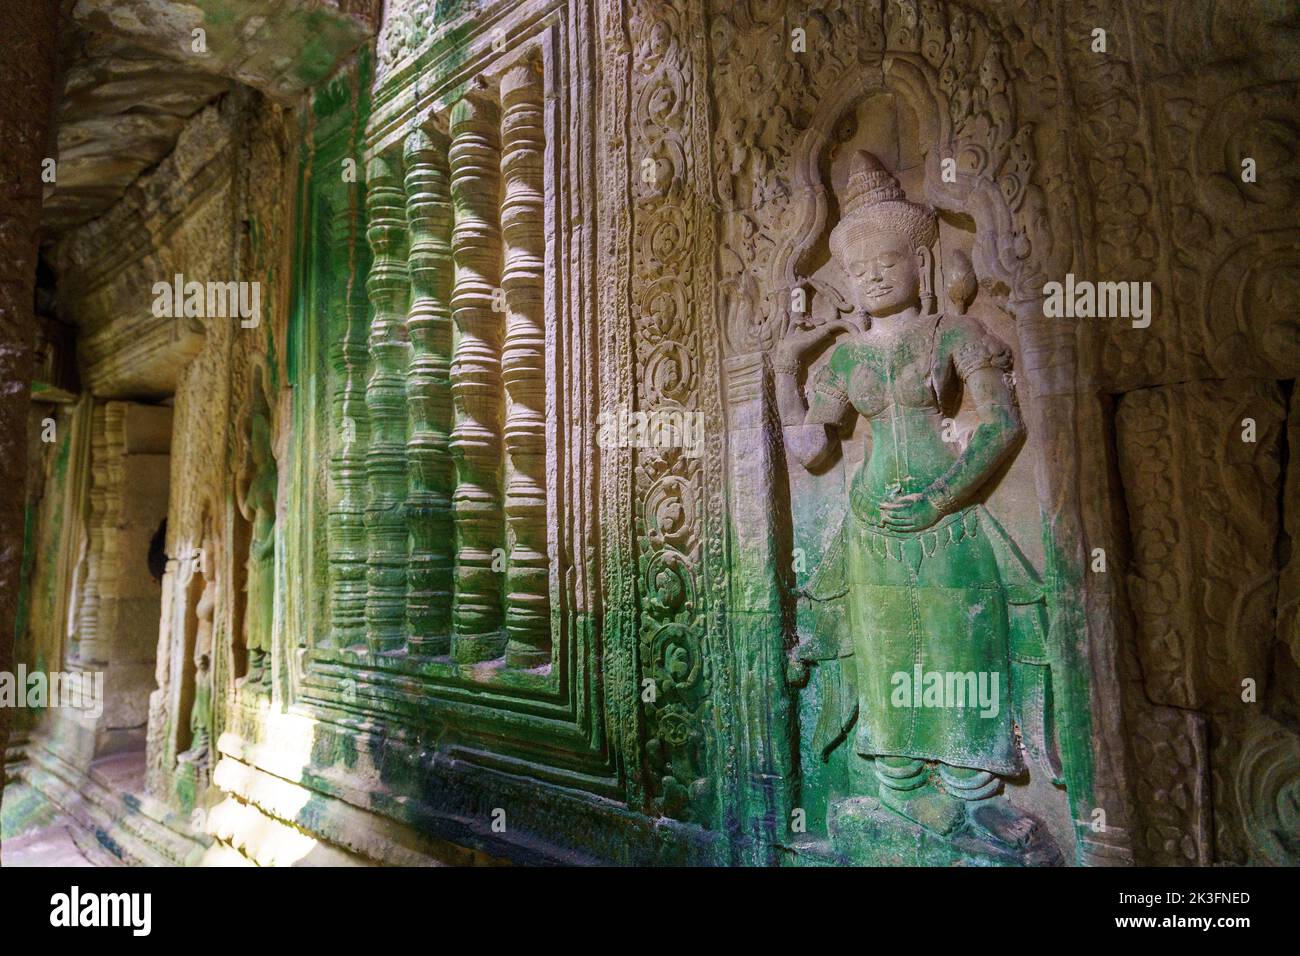 Camboya. Siem Riep. El parque arqueológico de Angkor. Una escultura en bajorrelieve de Devata en Preah Khan siglo 12th templo hindú Foto de stock